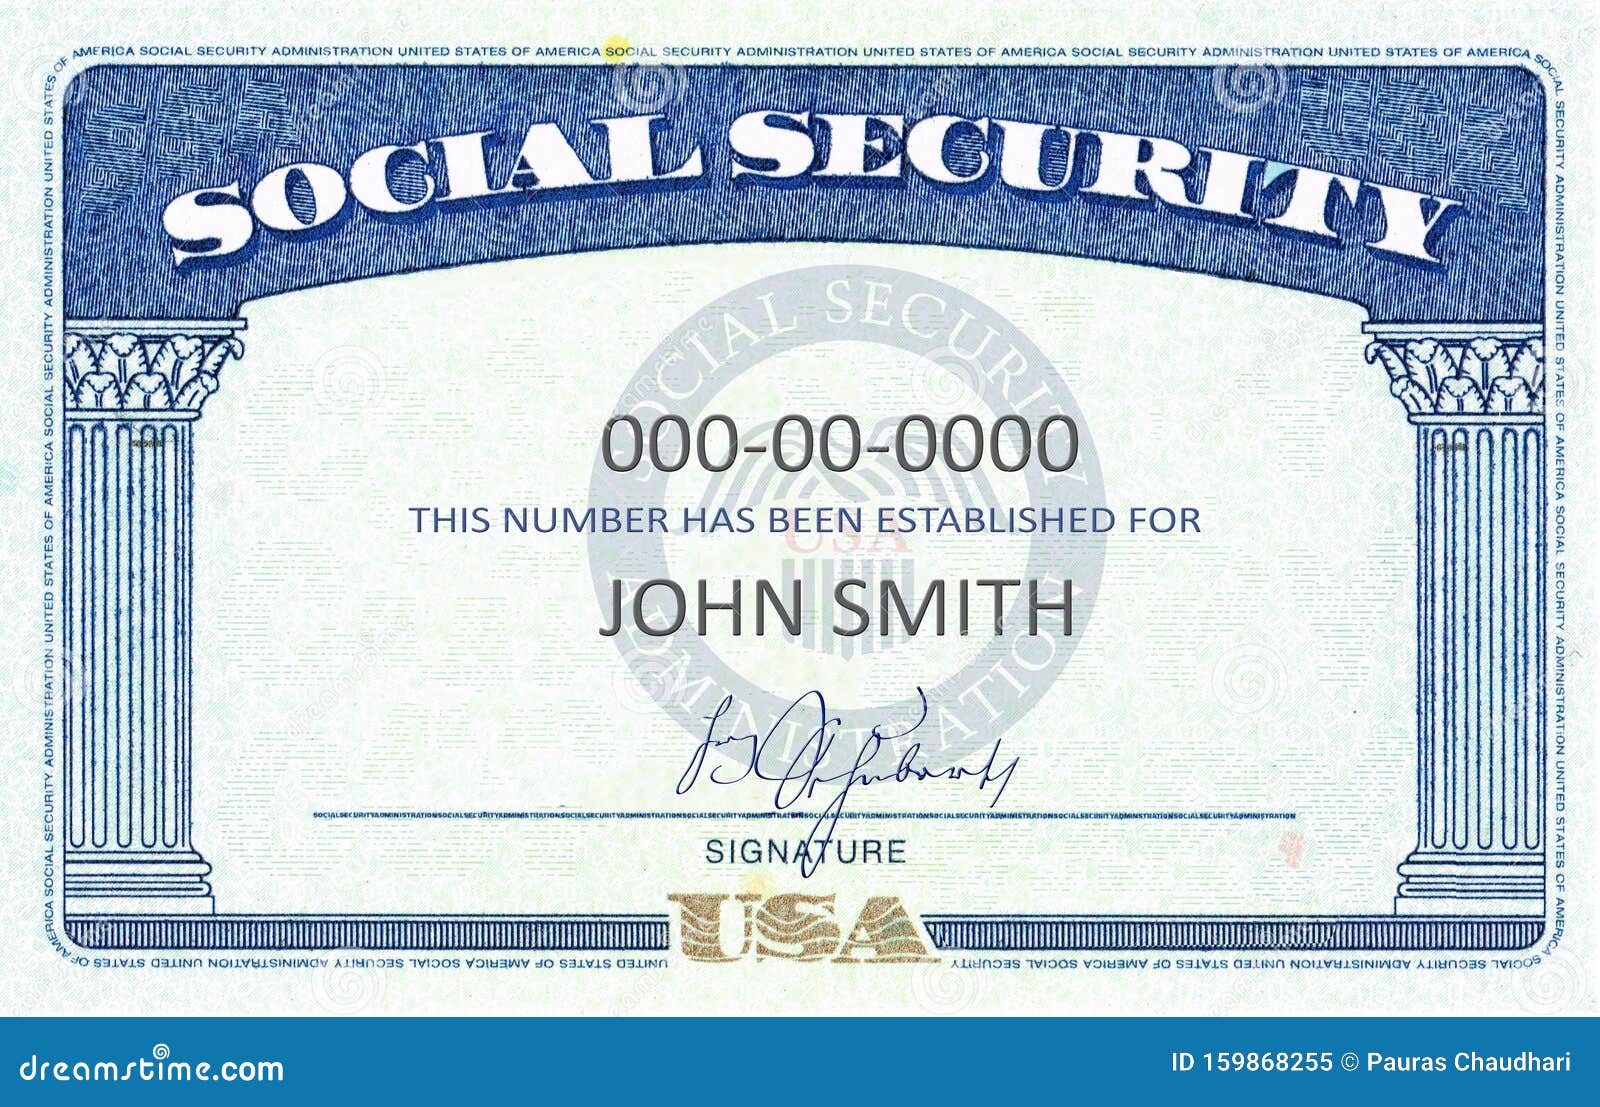 25 Blank Social Security Card Photos - Free & Royalty-Free Stock Inside Social Security Card Template Pdf